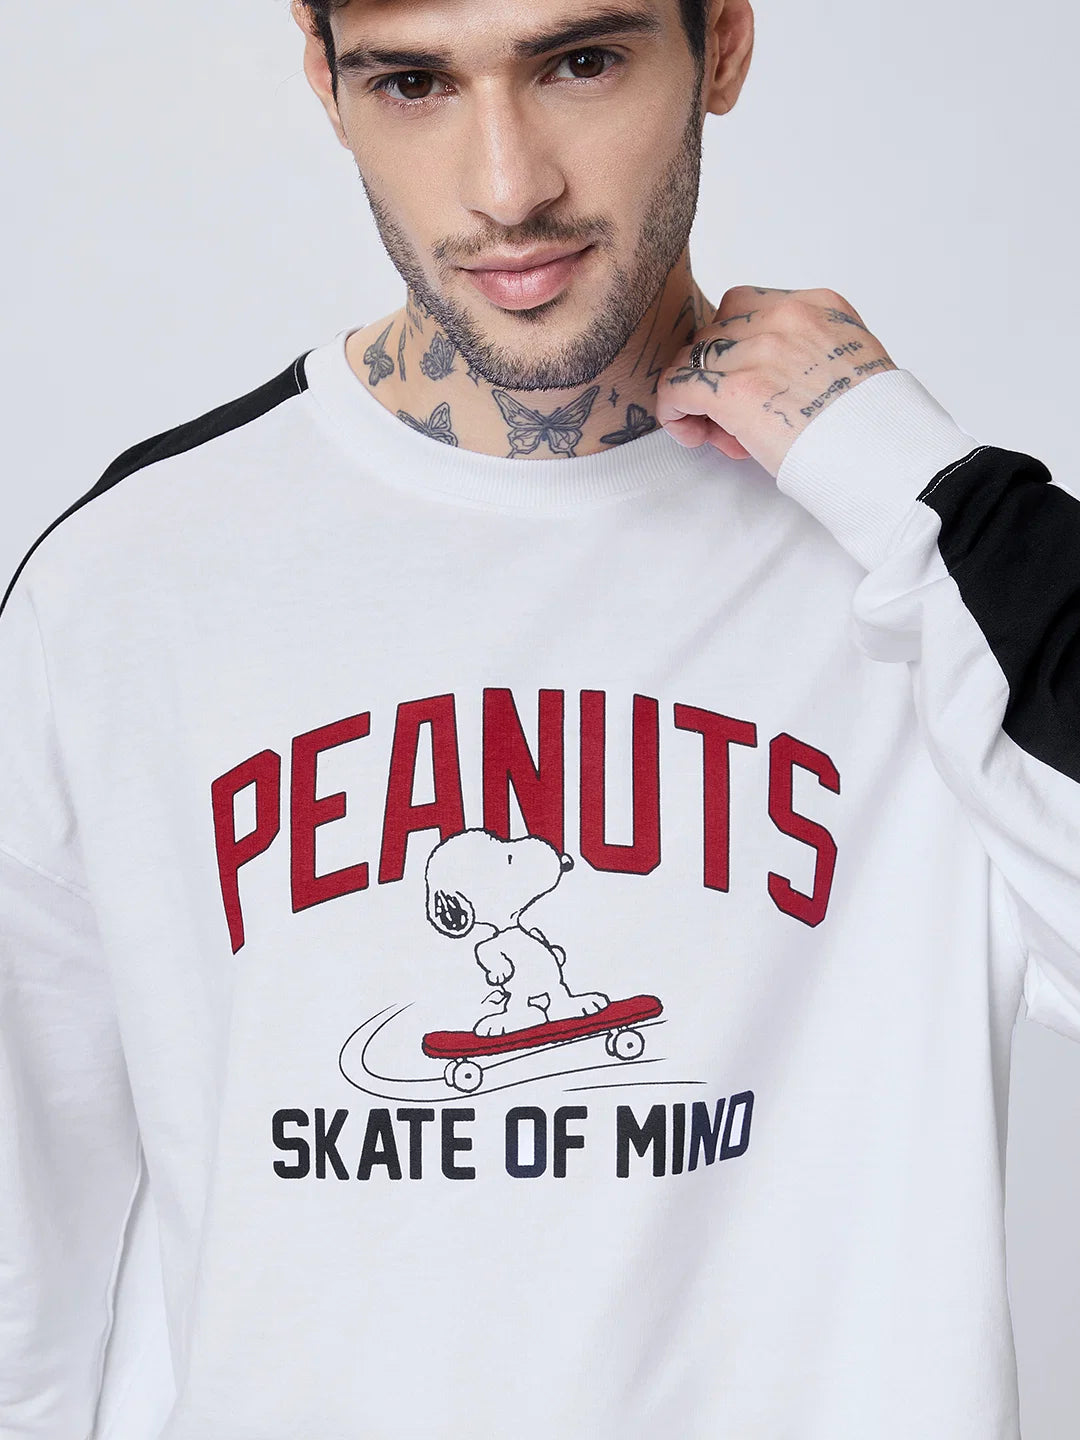 Peanuts Skate Of Mind (UK version)